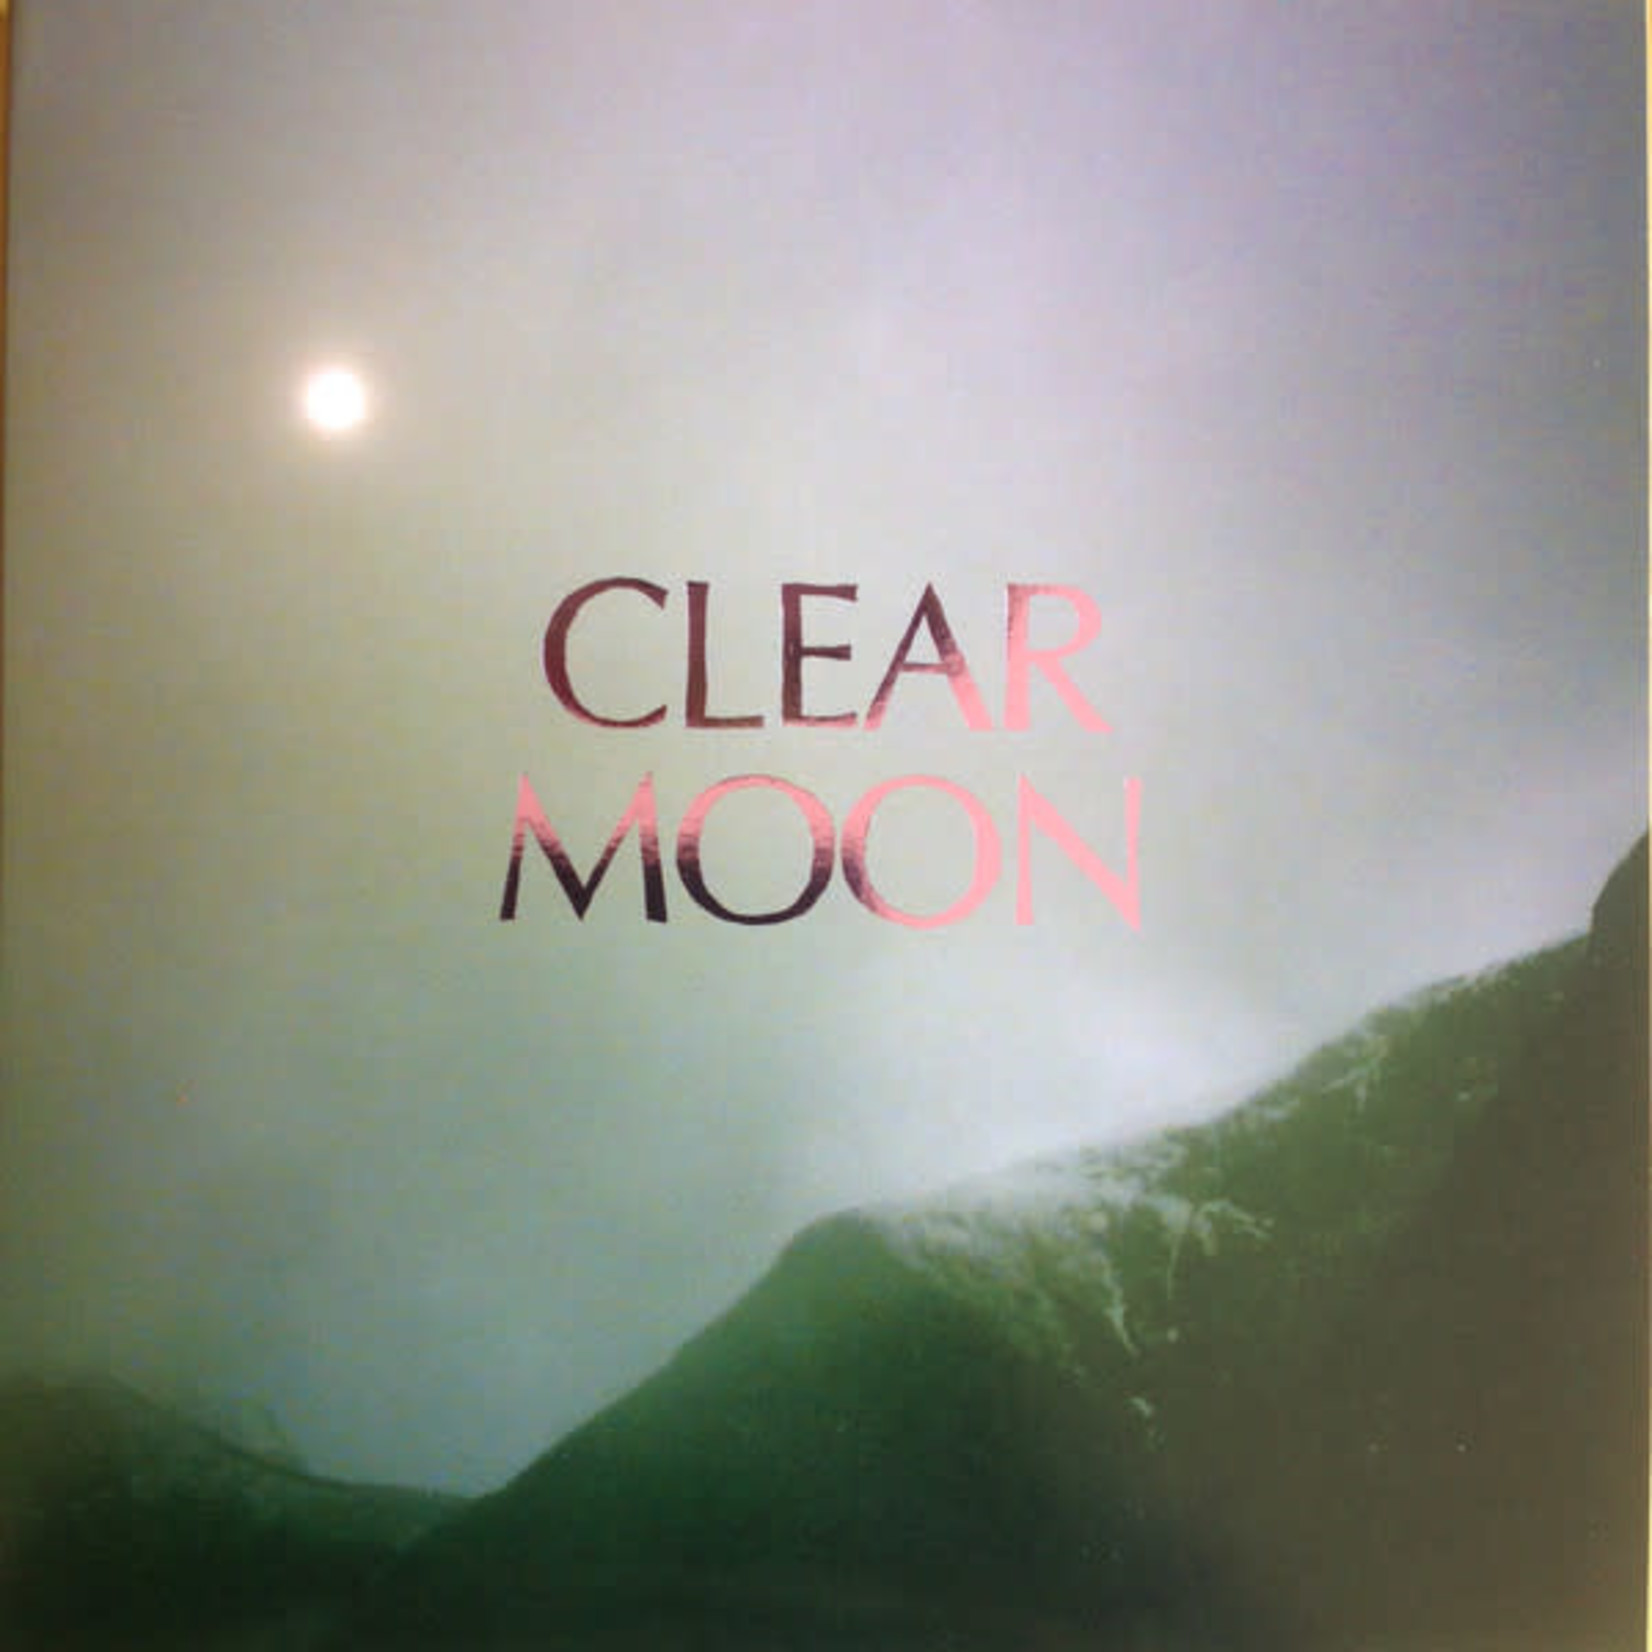 PW Elverum & Sun Mount Eerie - Clear Moon / Ocean Roar (2LP)